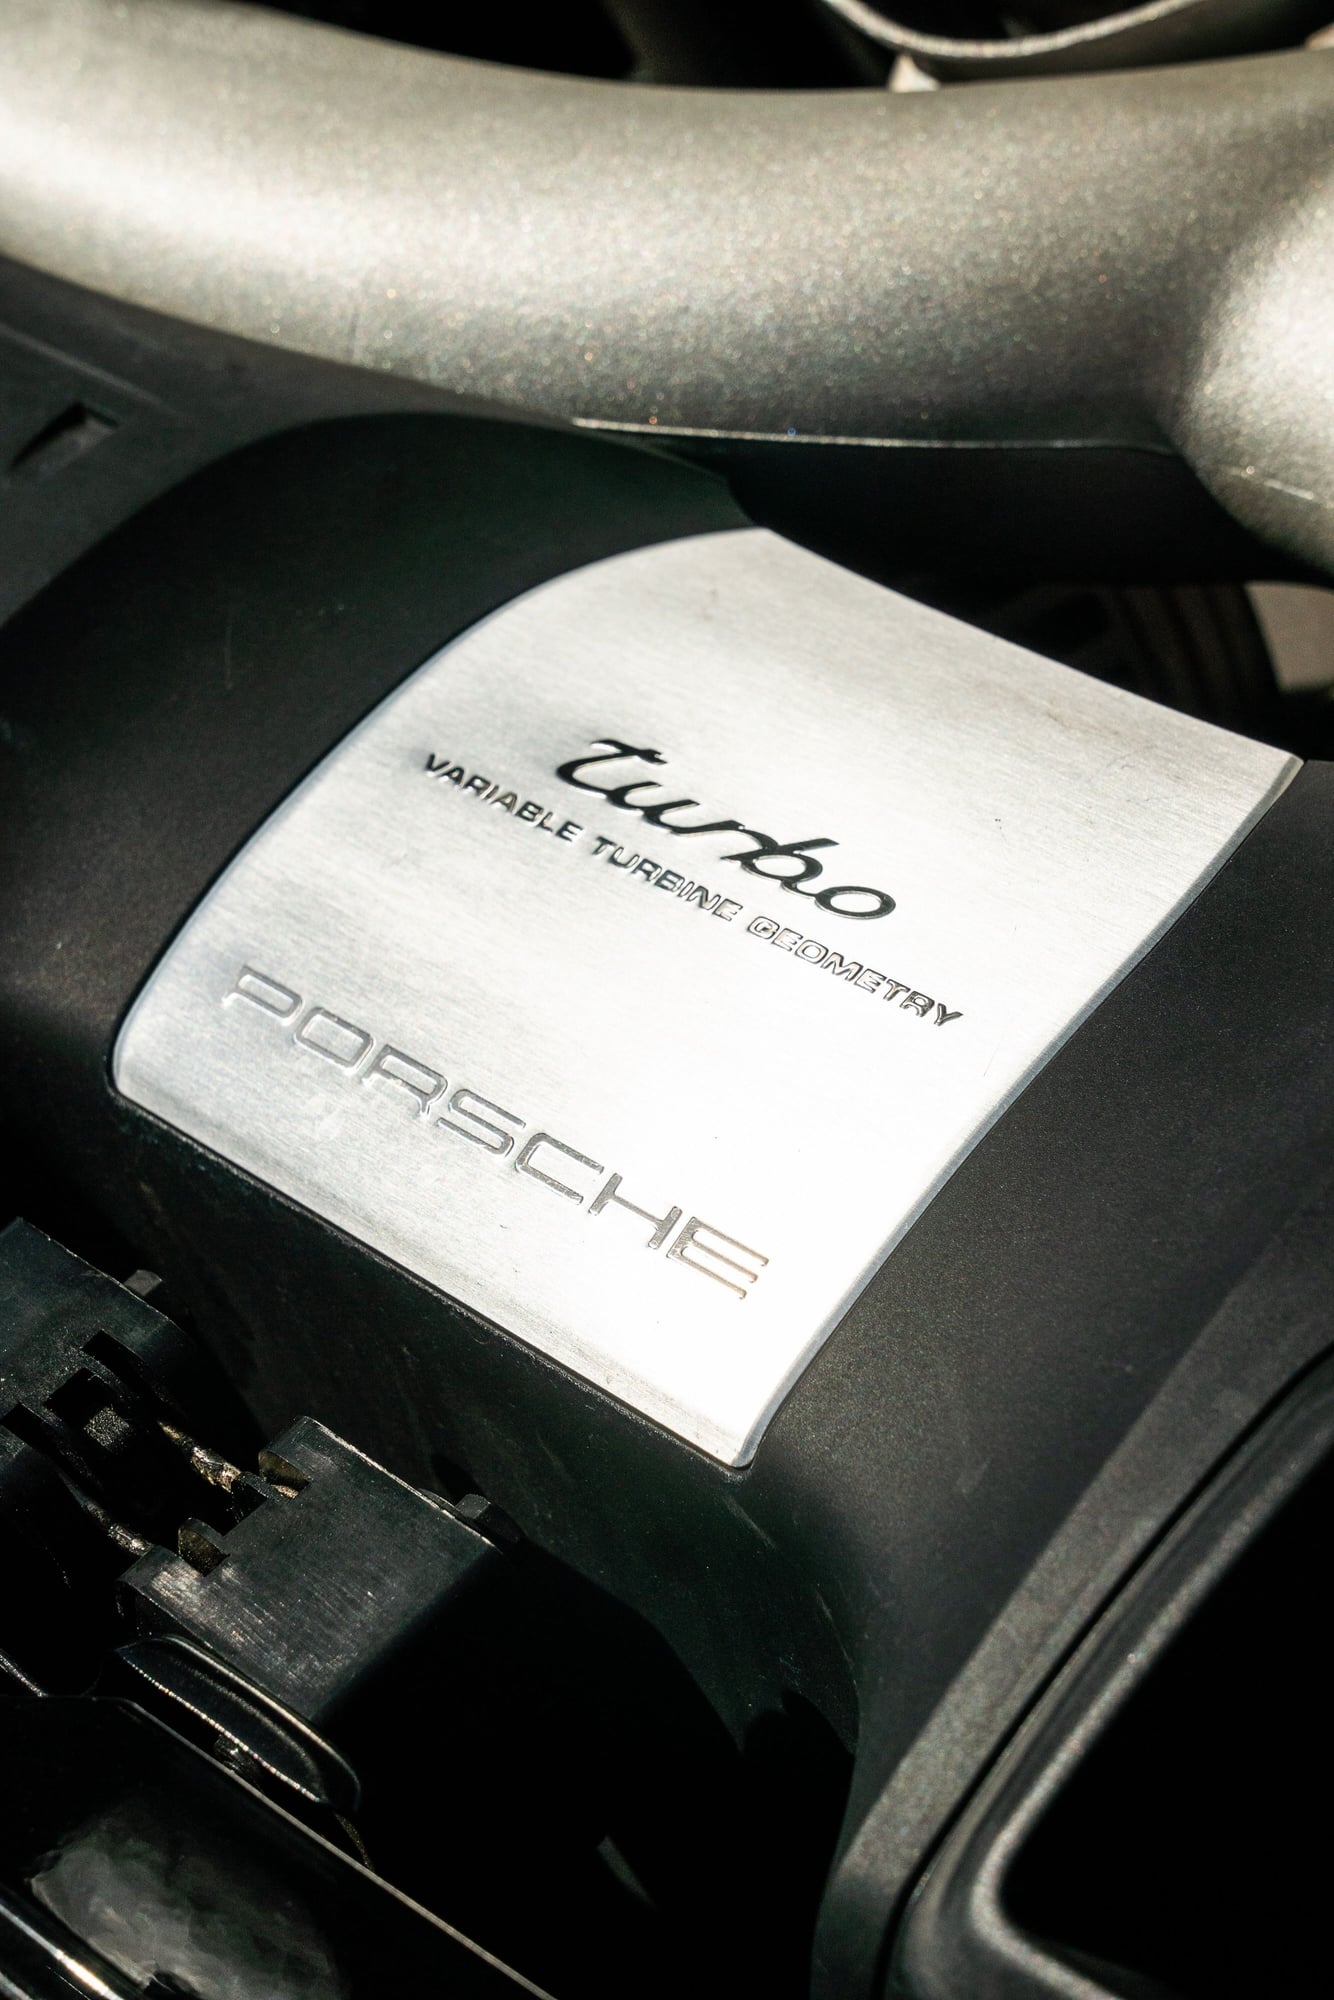 2007 Porsche 911 - 37K-MILE 2007 PORSCHE 997 TURBO COUPE 6MT - Used - Sacramento, CA 95819, United States